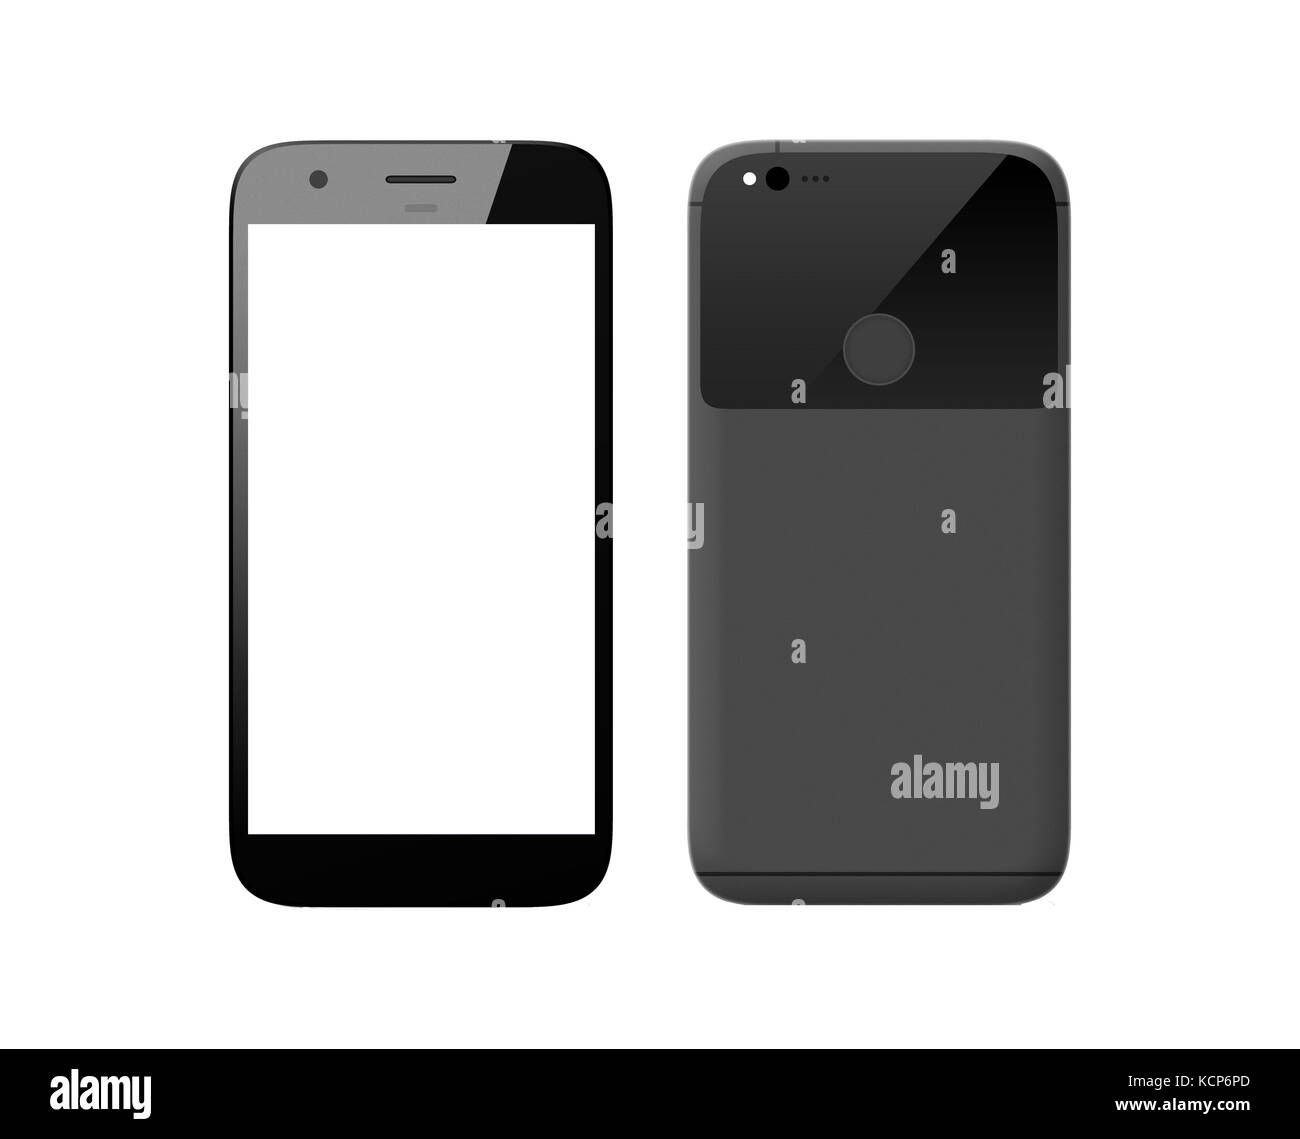 Smart phone isolated on white background Stock Photo